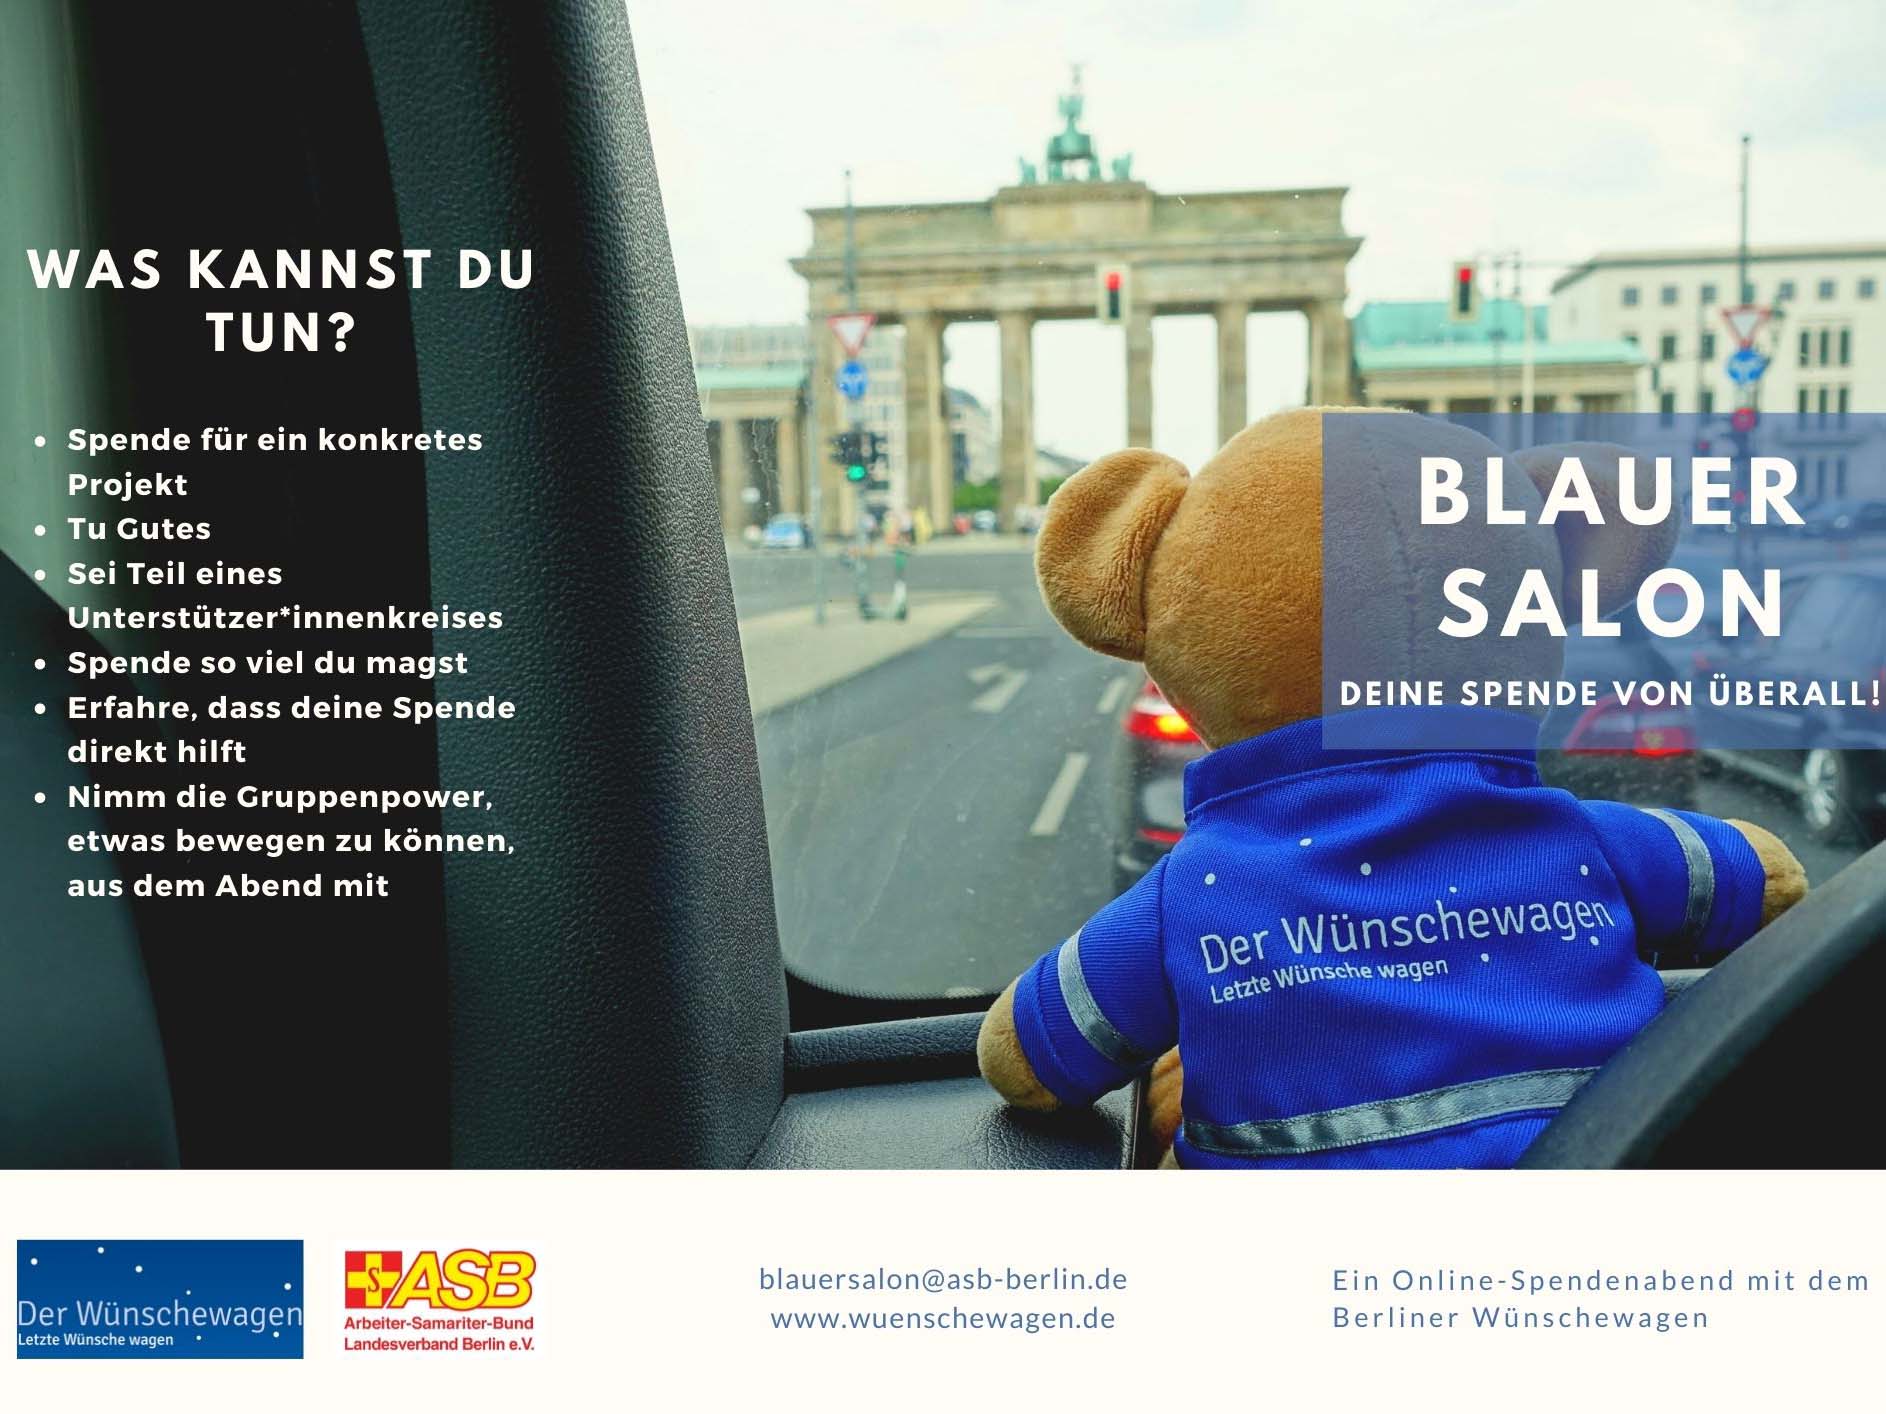 29.4., Tag des Wunsches: ASB-Wünschewagen Berlin öffnet digitale Türen zum Kennenlernen